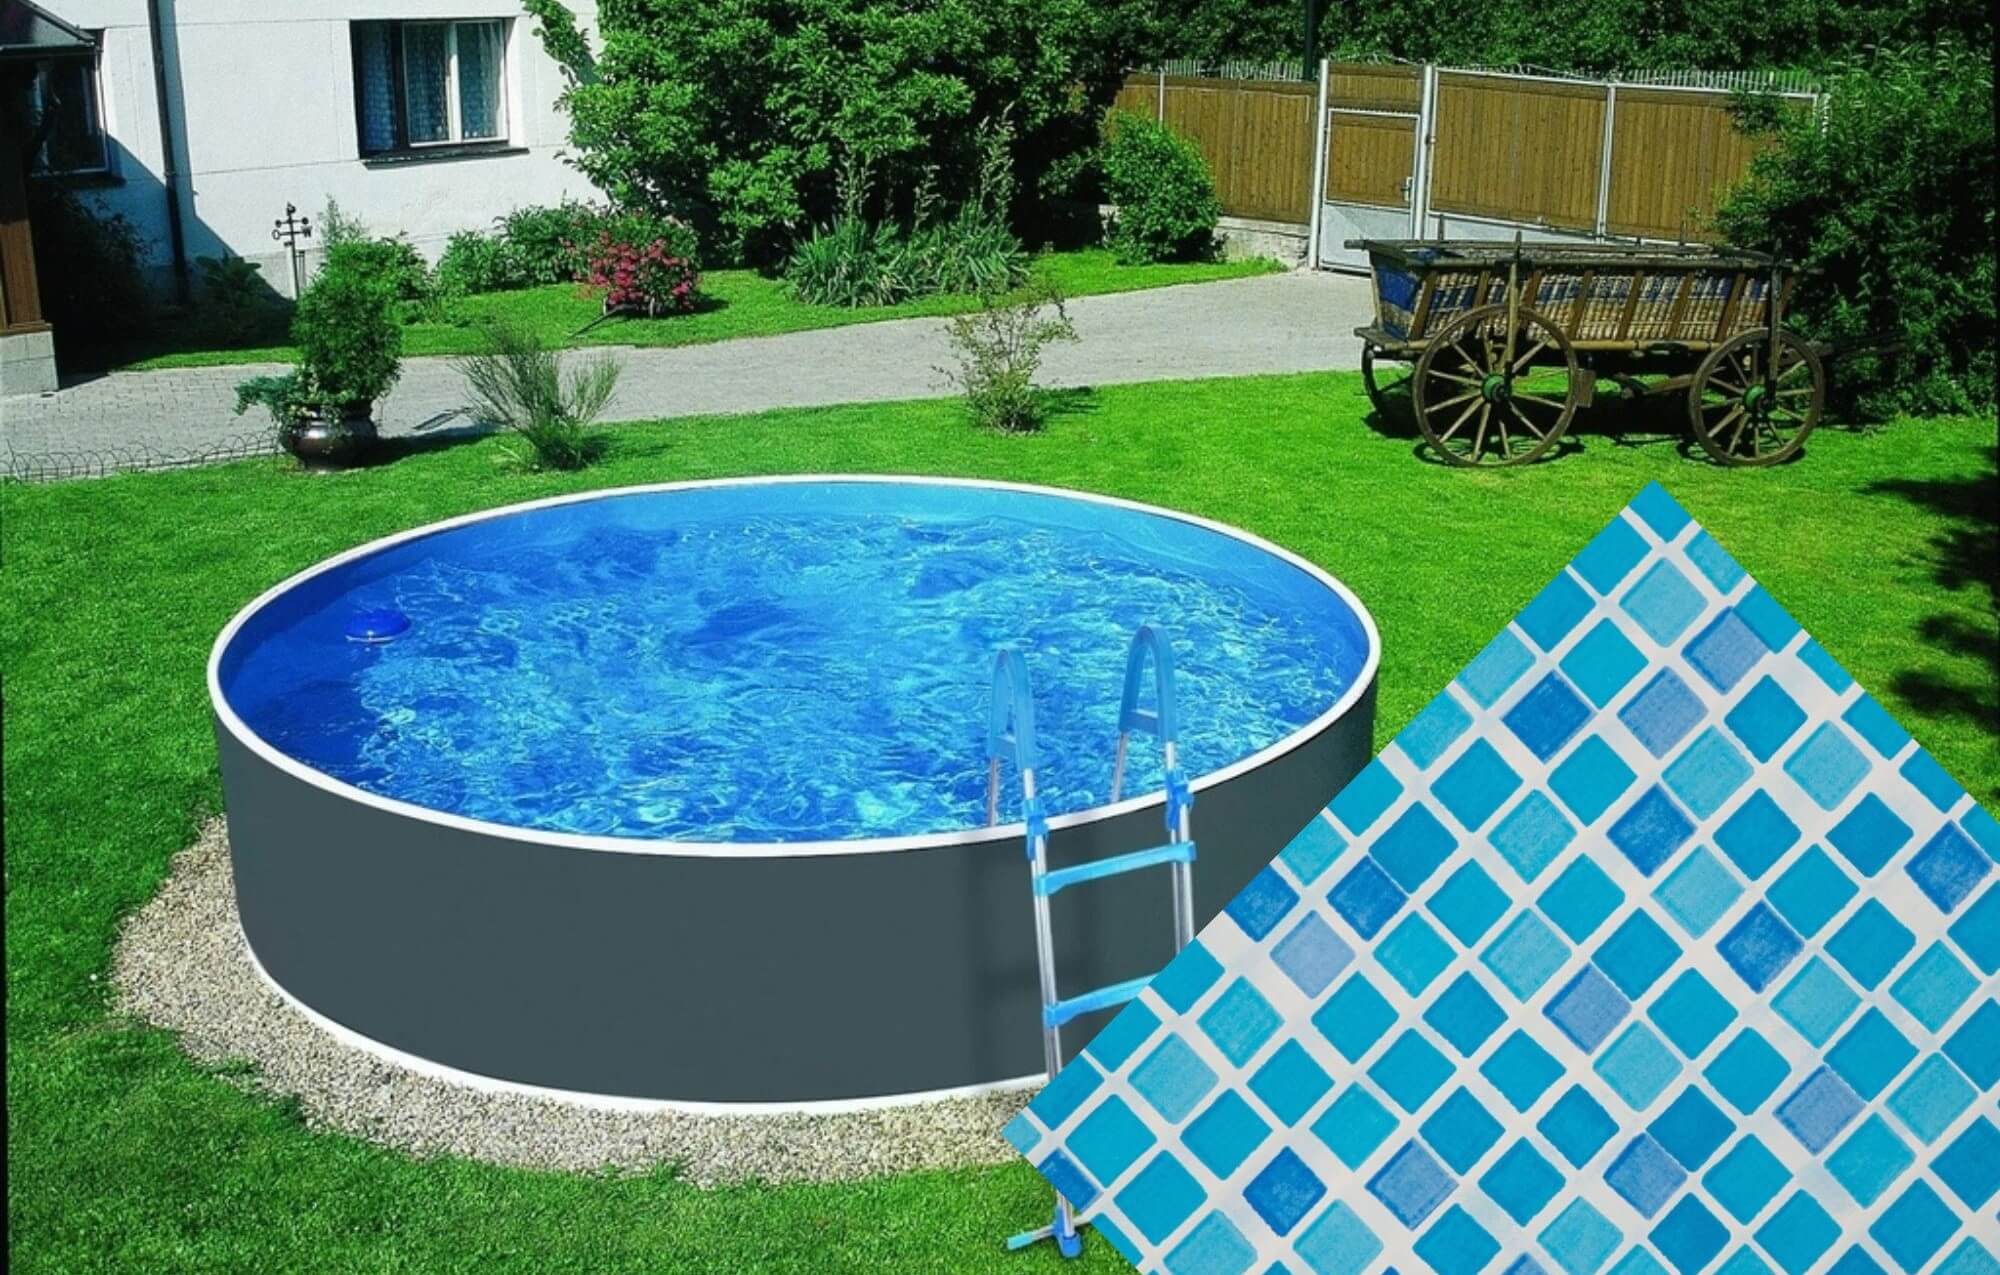 Planet Pool 30690 Náhradná bazénová fólia Mosaic pre bazén priemer 3,6 x 1,1 m